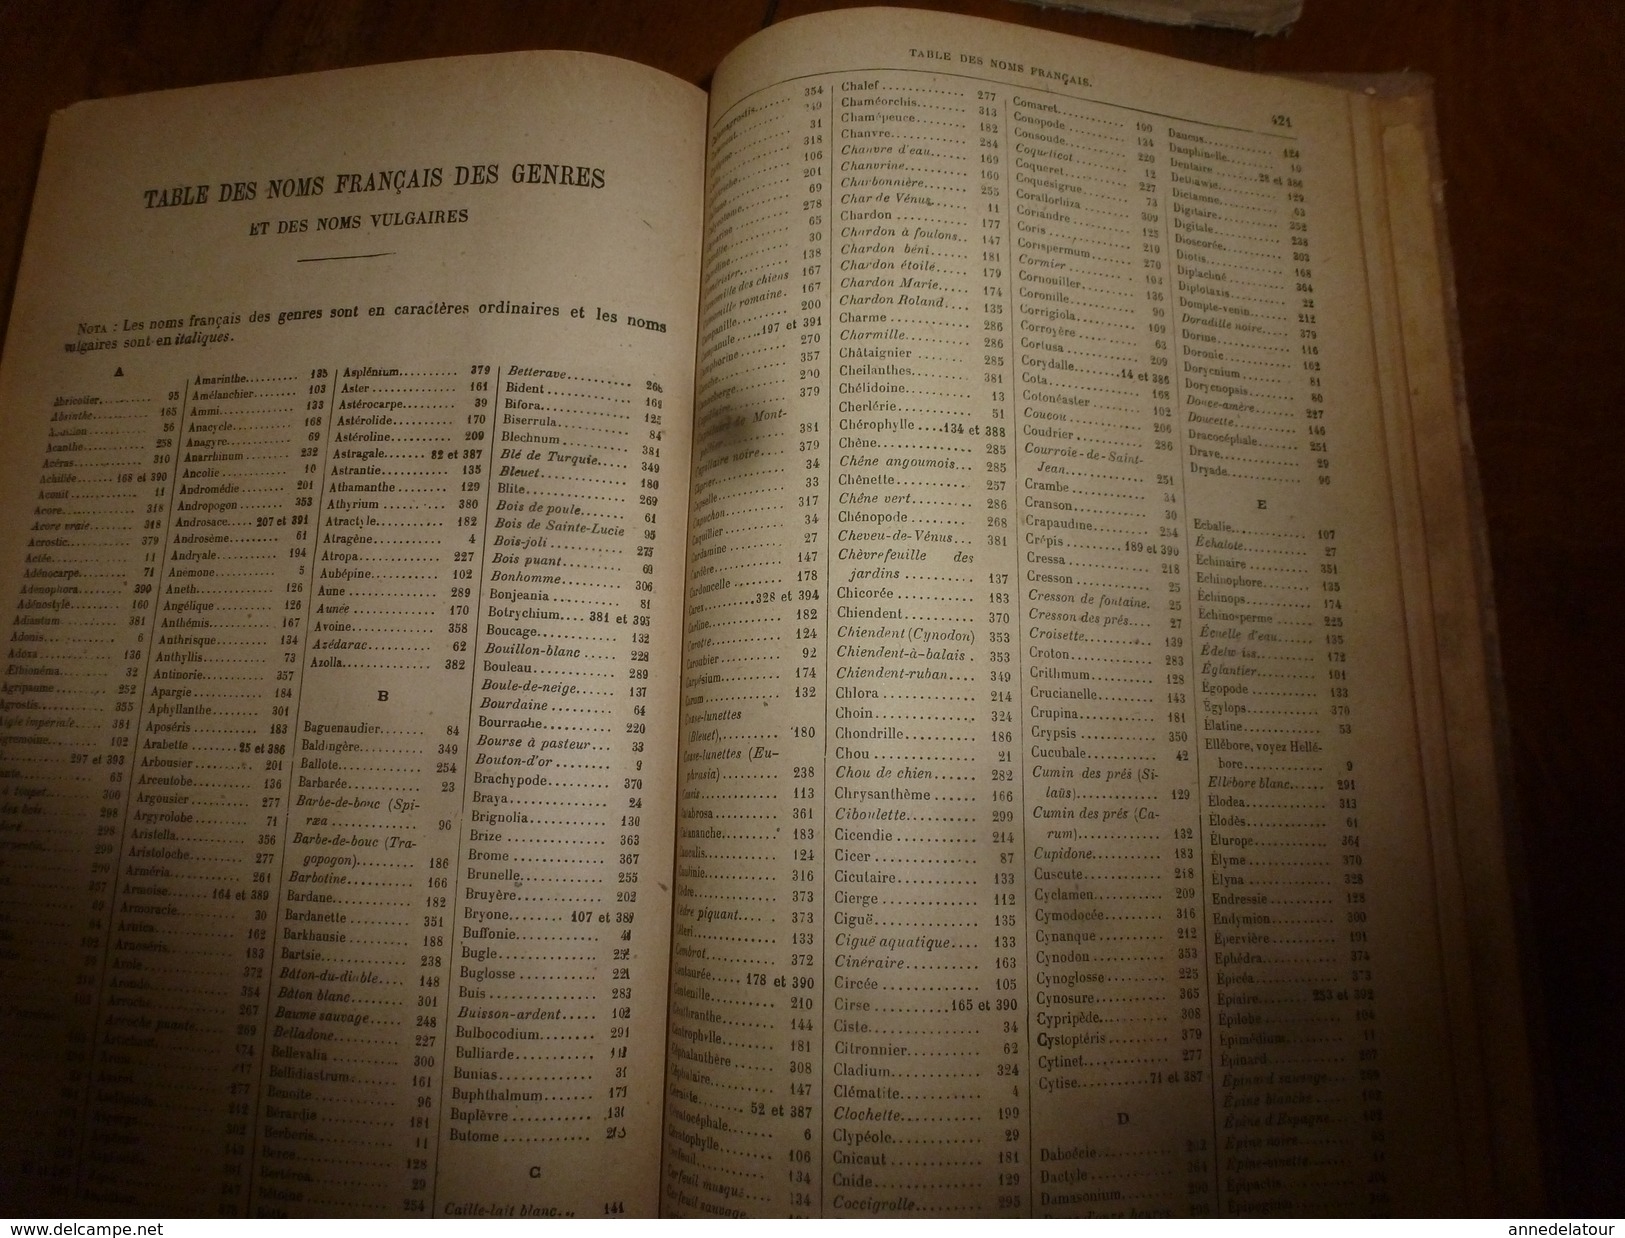 1944 FLORE complète de la France et de la Suisse par G. Bonnier et G. de Layens , comprenant 5.338 figures;etc